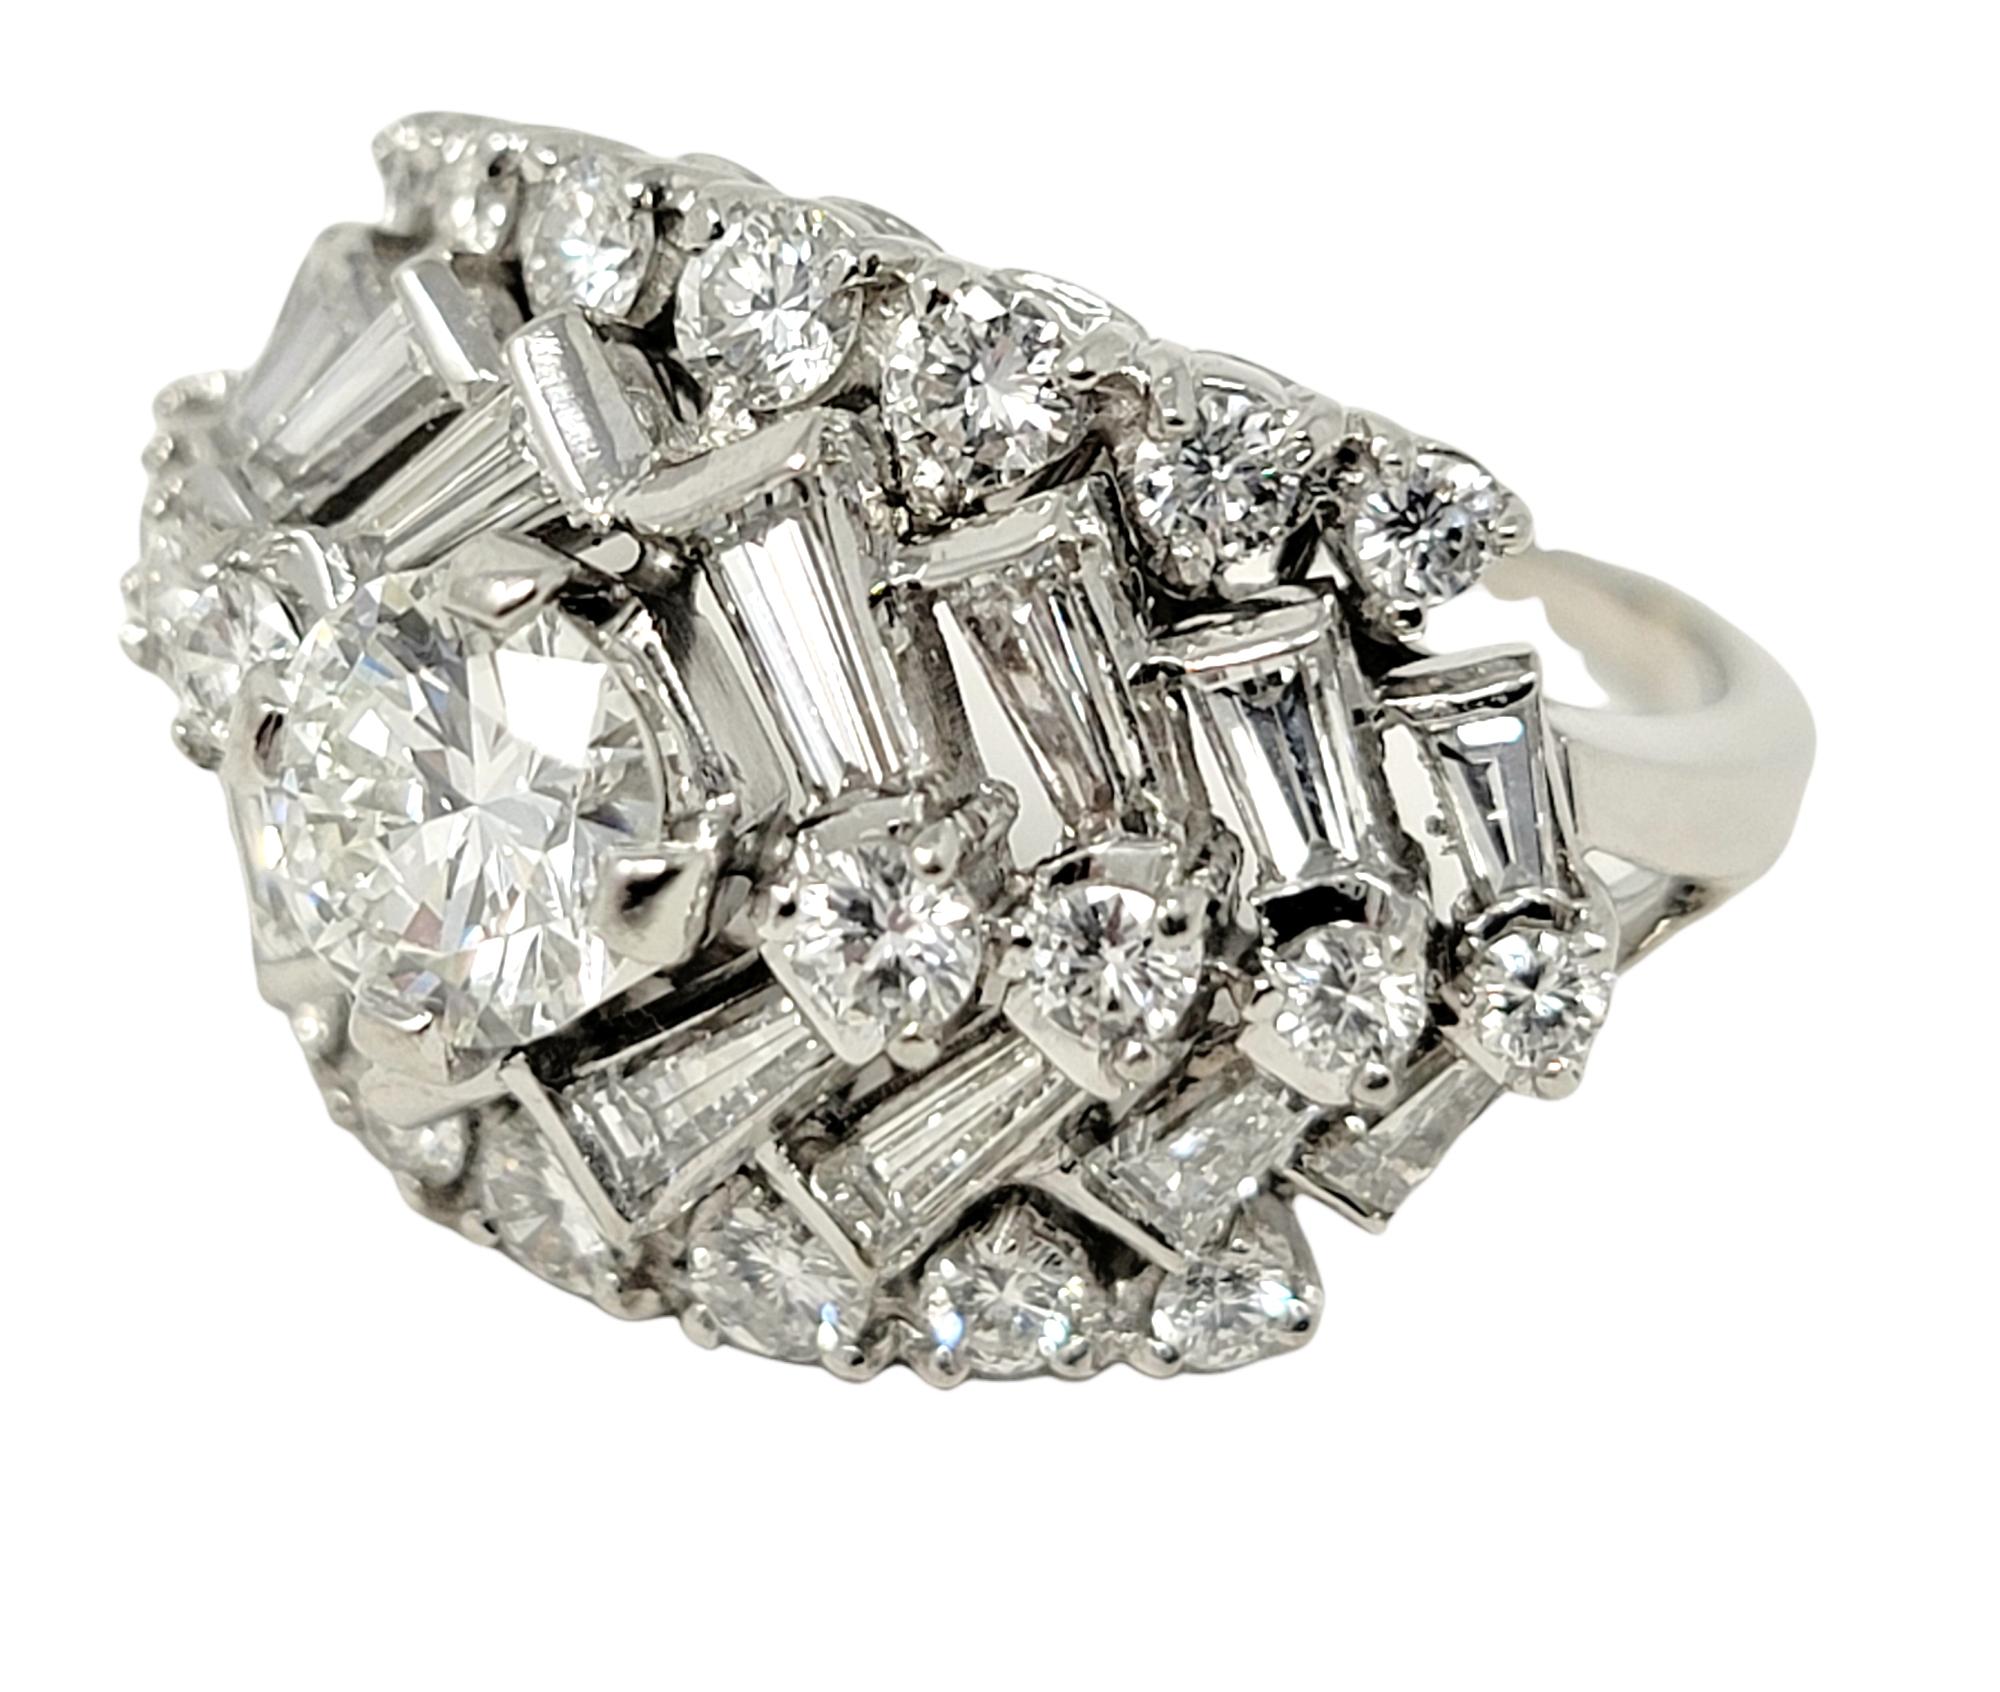 Taille de l'anneau : 7

Cette bague à diamants en forme de chevron, étincelante, vous coupera le souffle. Une incroyable pierre centrale brillante ronde de 0,75 carat, d'un blanc glacé, est entourée d'une série de diamants baguettes et ronds